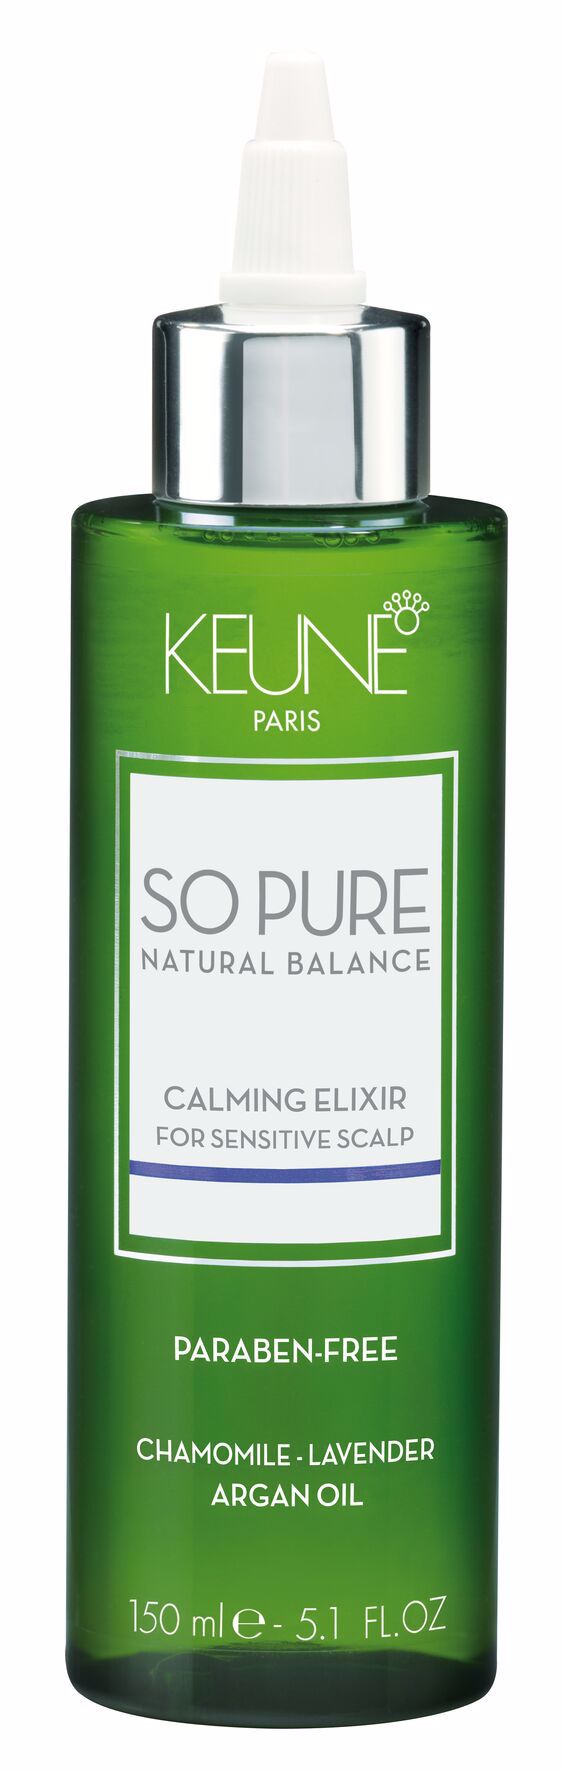 SP Calming Elixir, 150ml